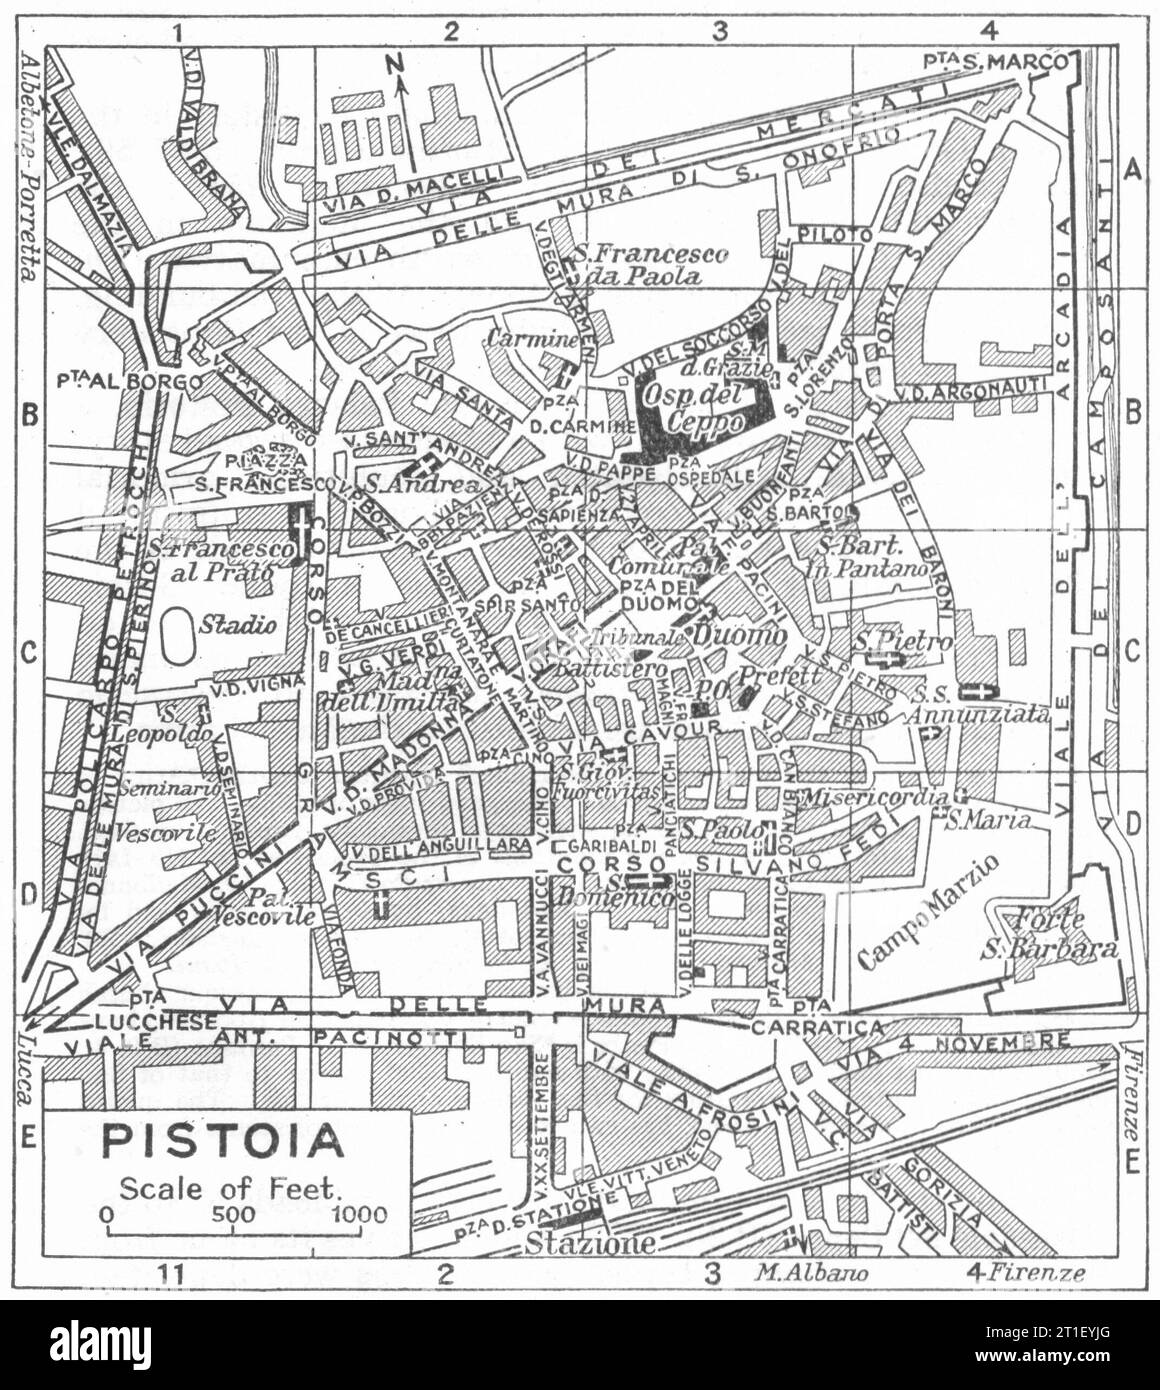 Piano città DI PISTOIA. Italia 1953 vecchia mappa d'epoca Foto Stock